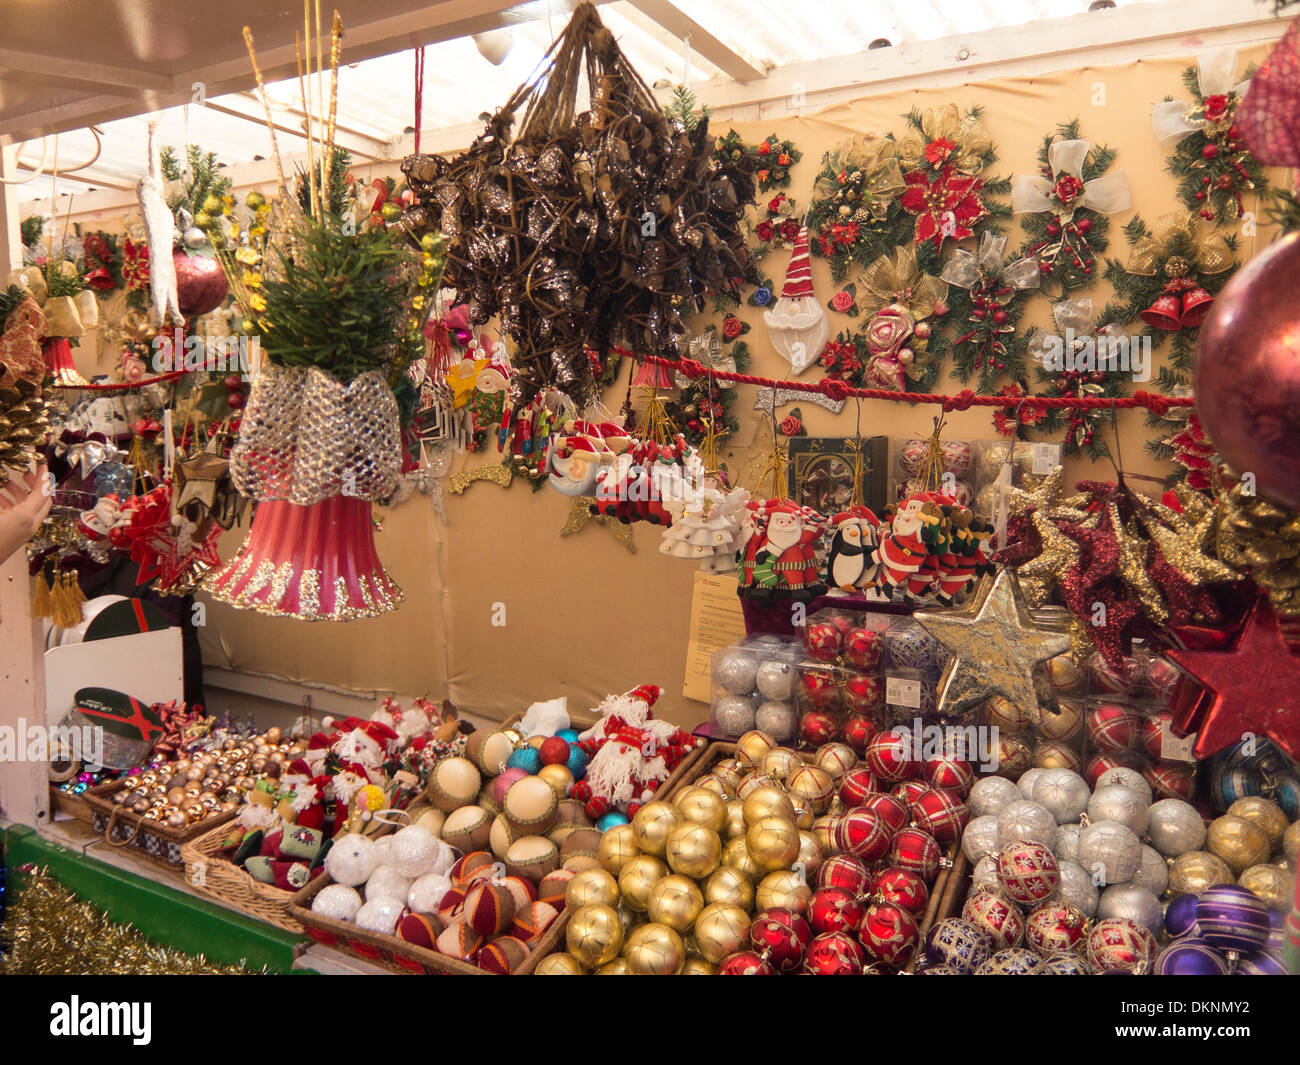 Europa, Spanien, Barcelona, Weihnachten, Weihnachten Kugeln, Drum und dran, Ornamentik. Stockfoto